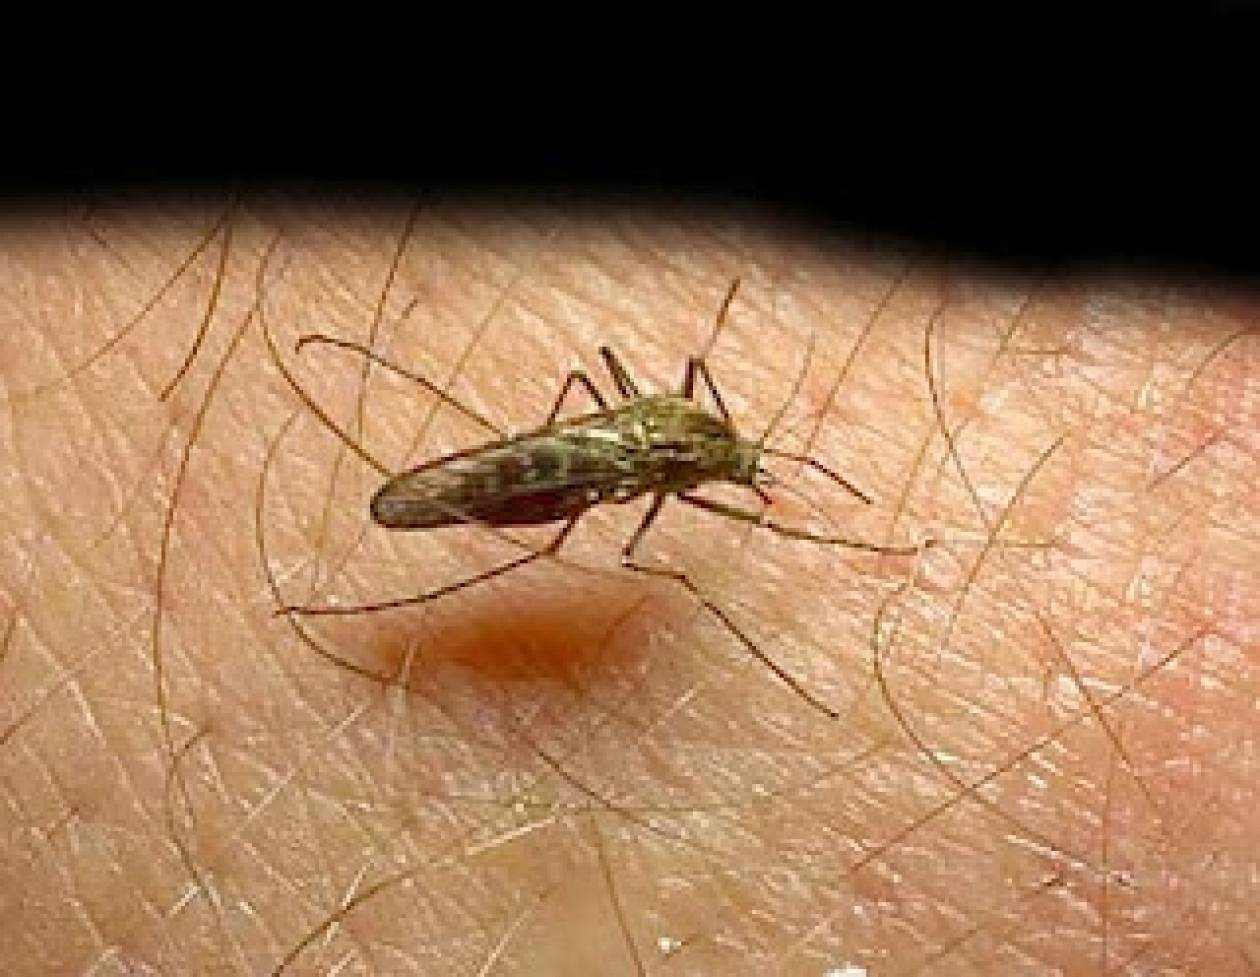 Ενημέρωση για τα κρούσματα ελονοσίας σε μετανάστες στην Καρδίτσα